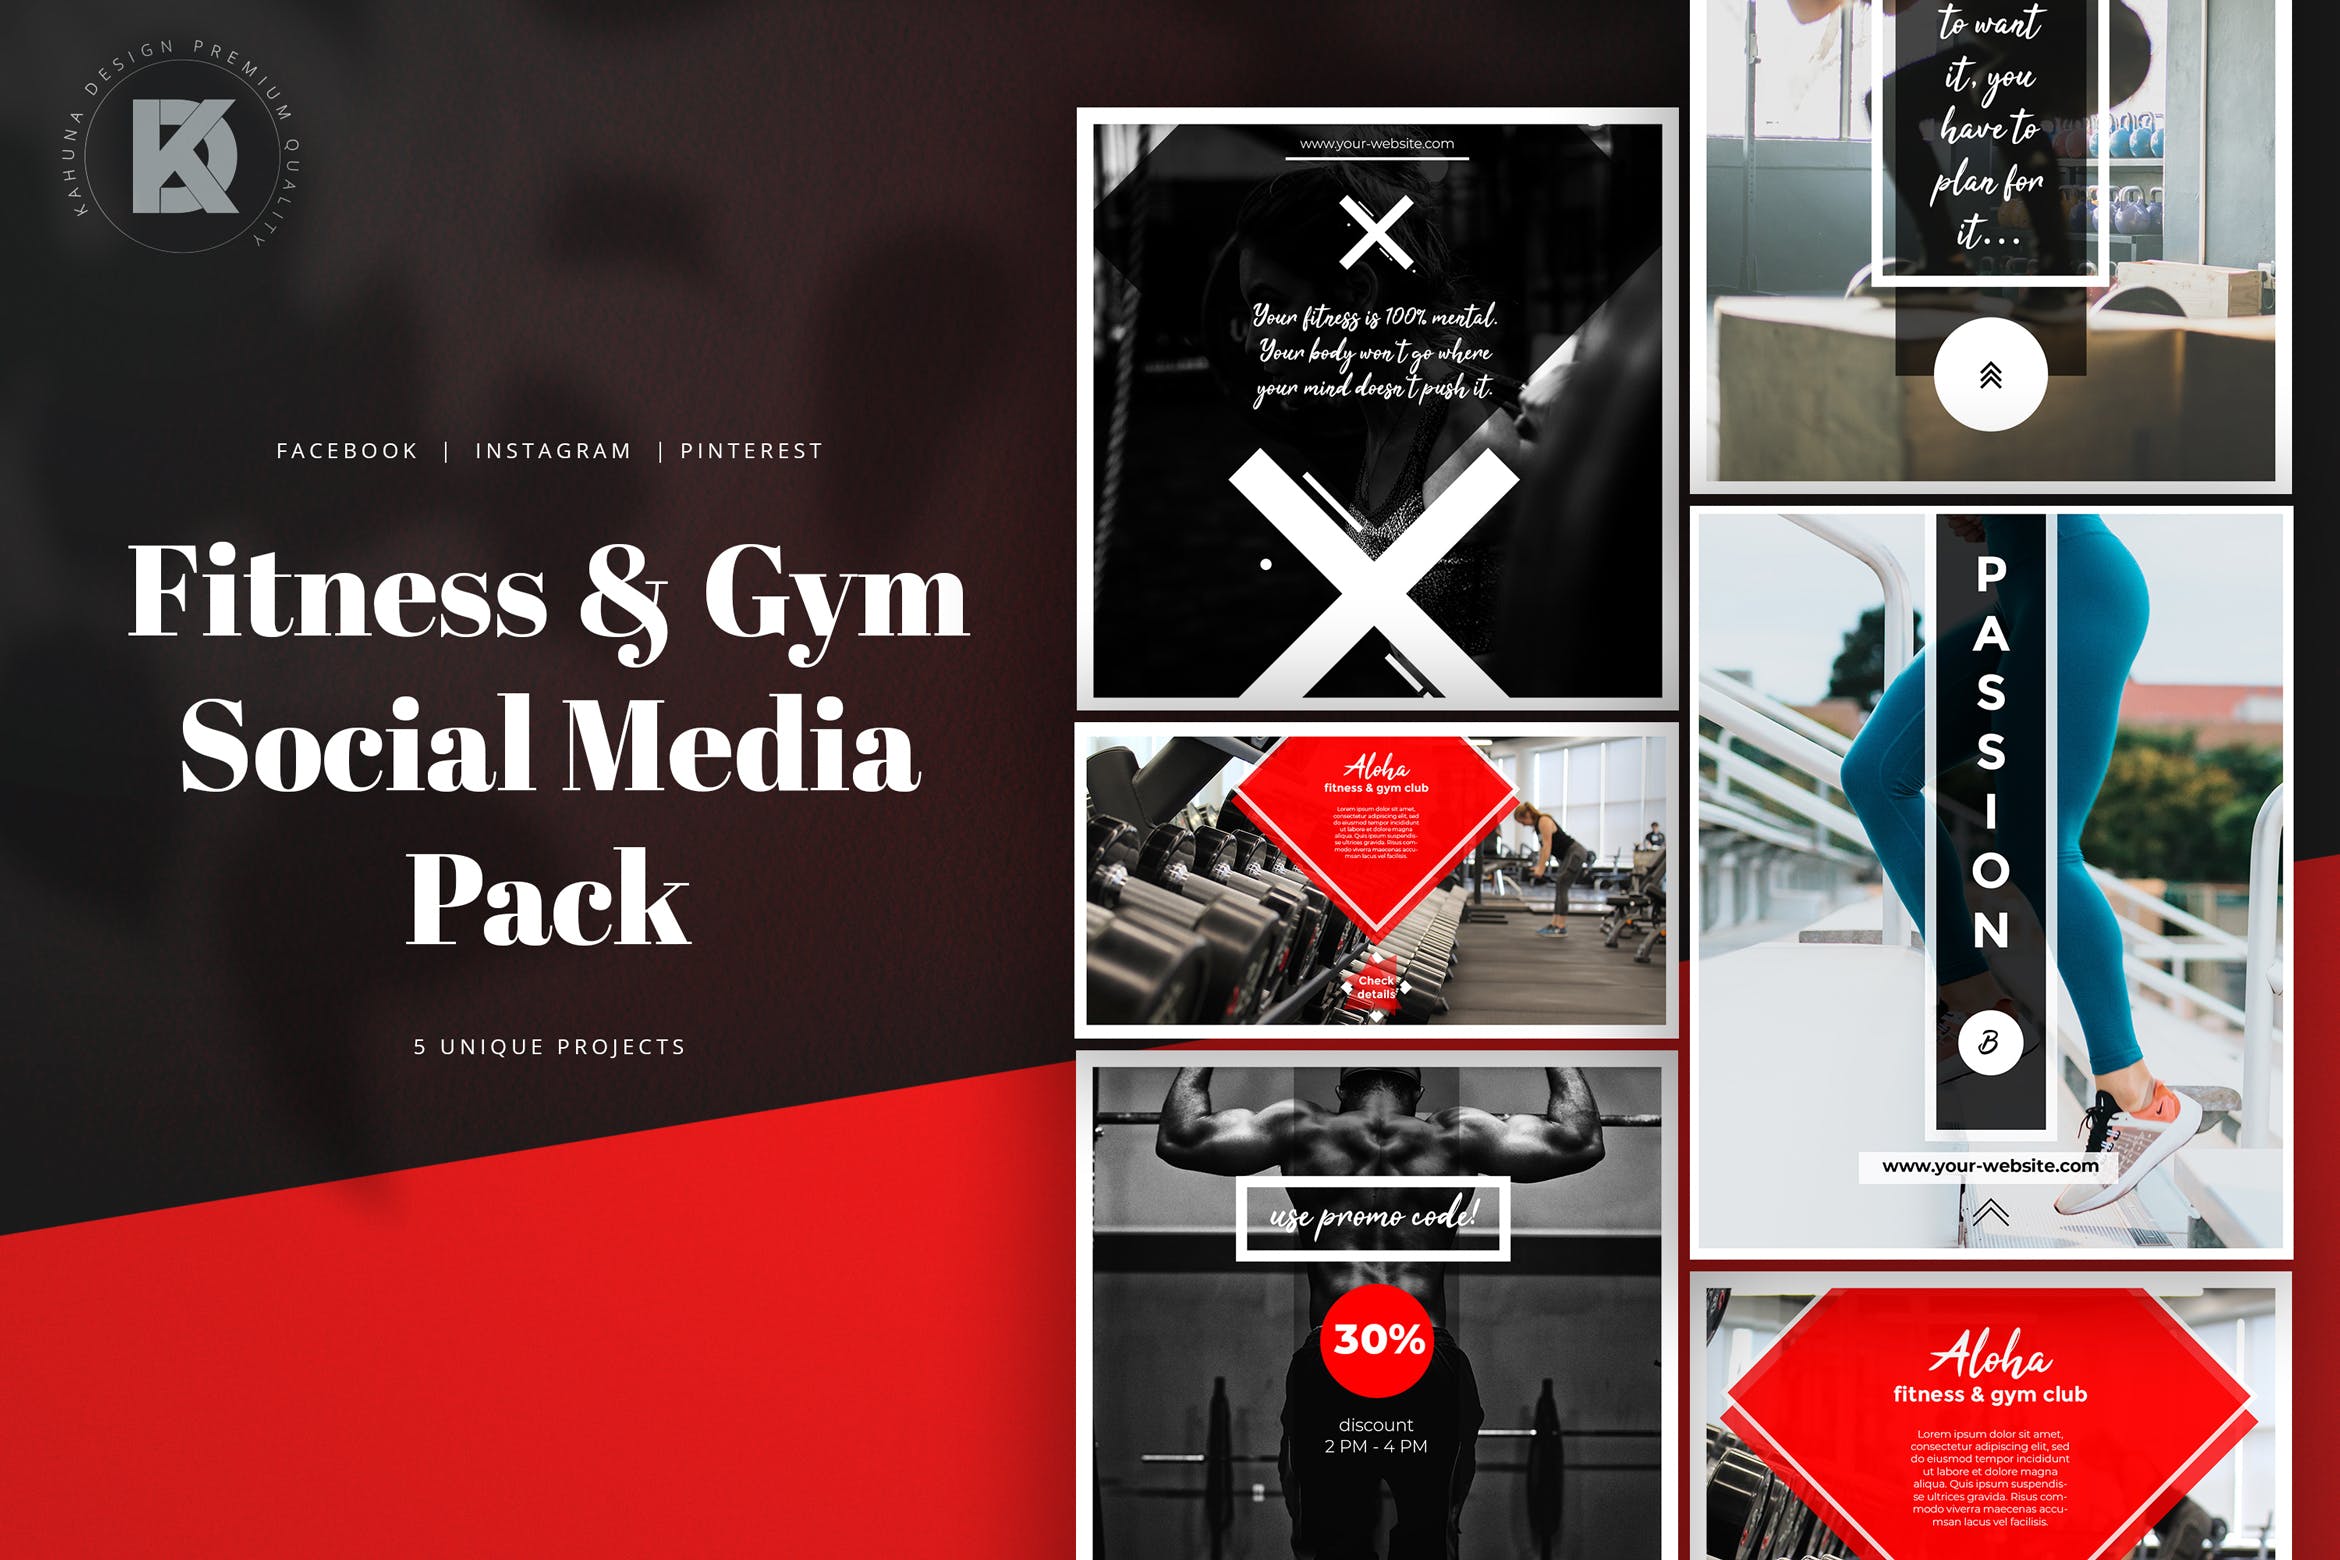 健身/健身房社交媒体横幅广告设计模板第一素材精选 Fitness & Gym Social Media Banners Pack插图